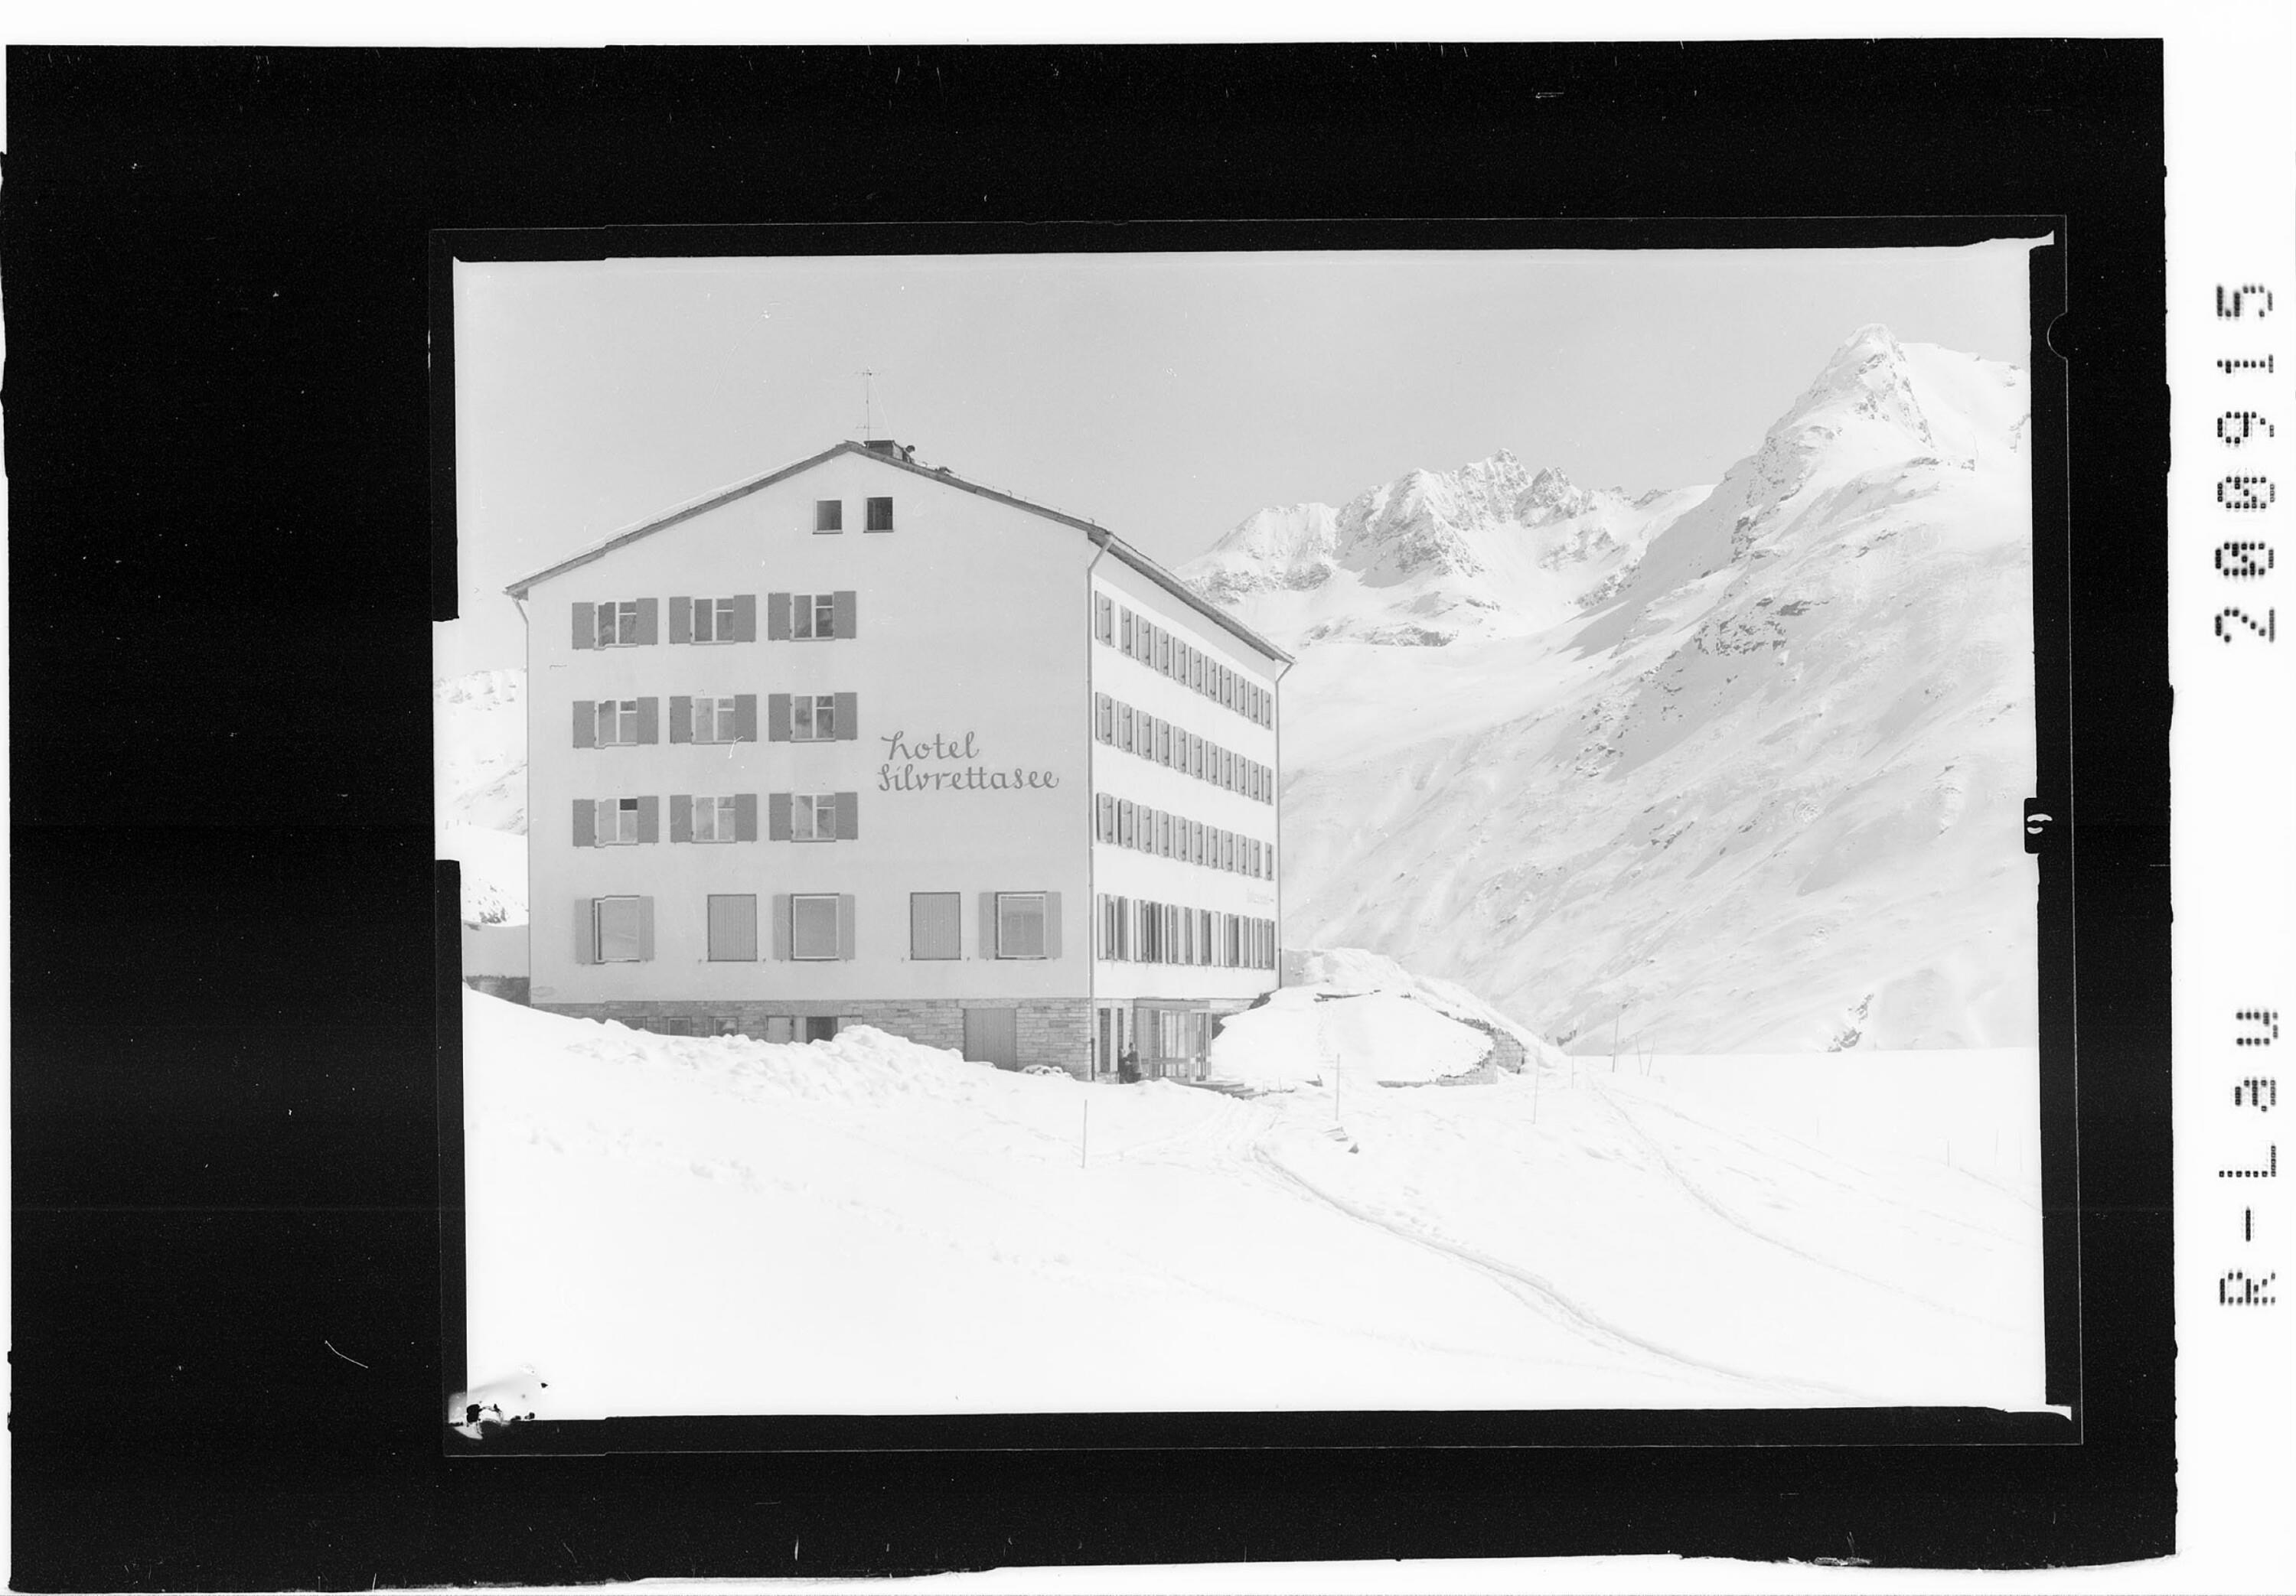 Hotel Silvrettasee auf der Bielerhöhe 2030 m></div>


    <hr>
    <div class=